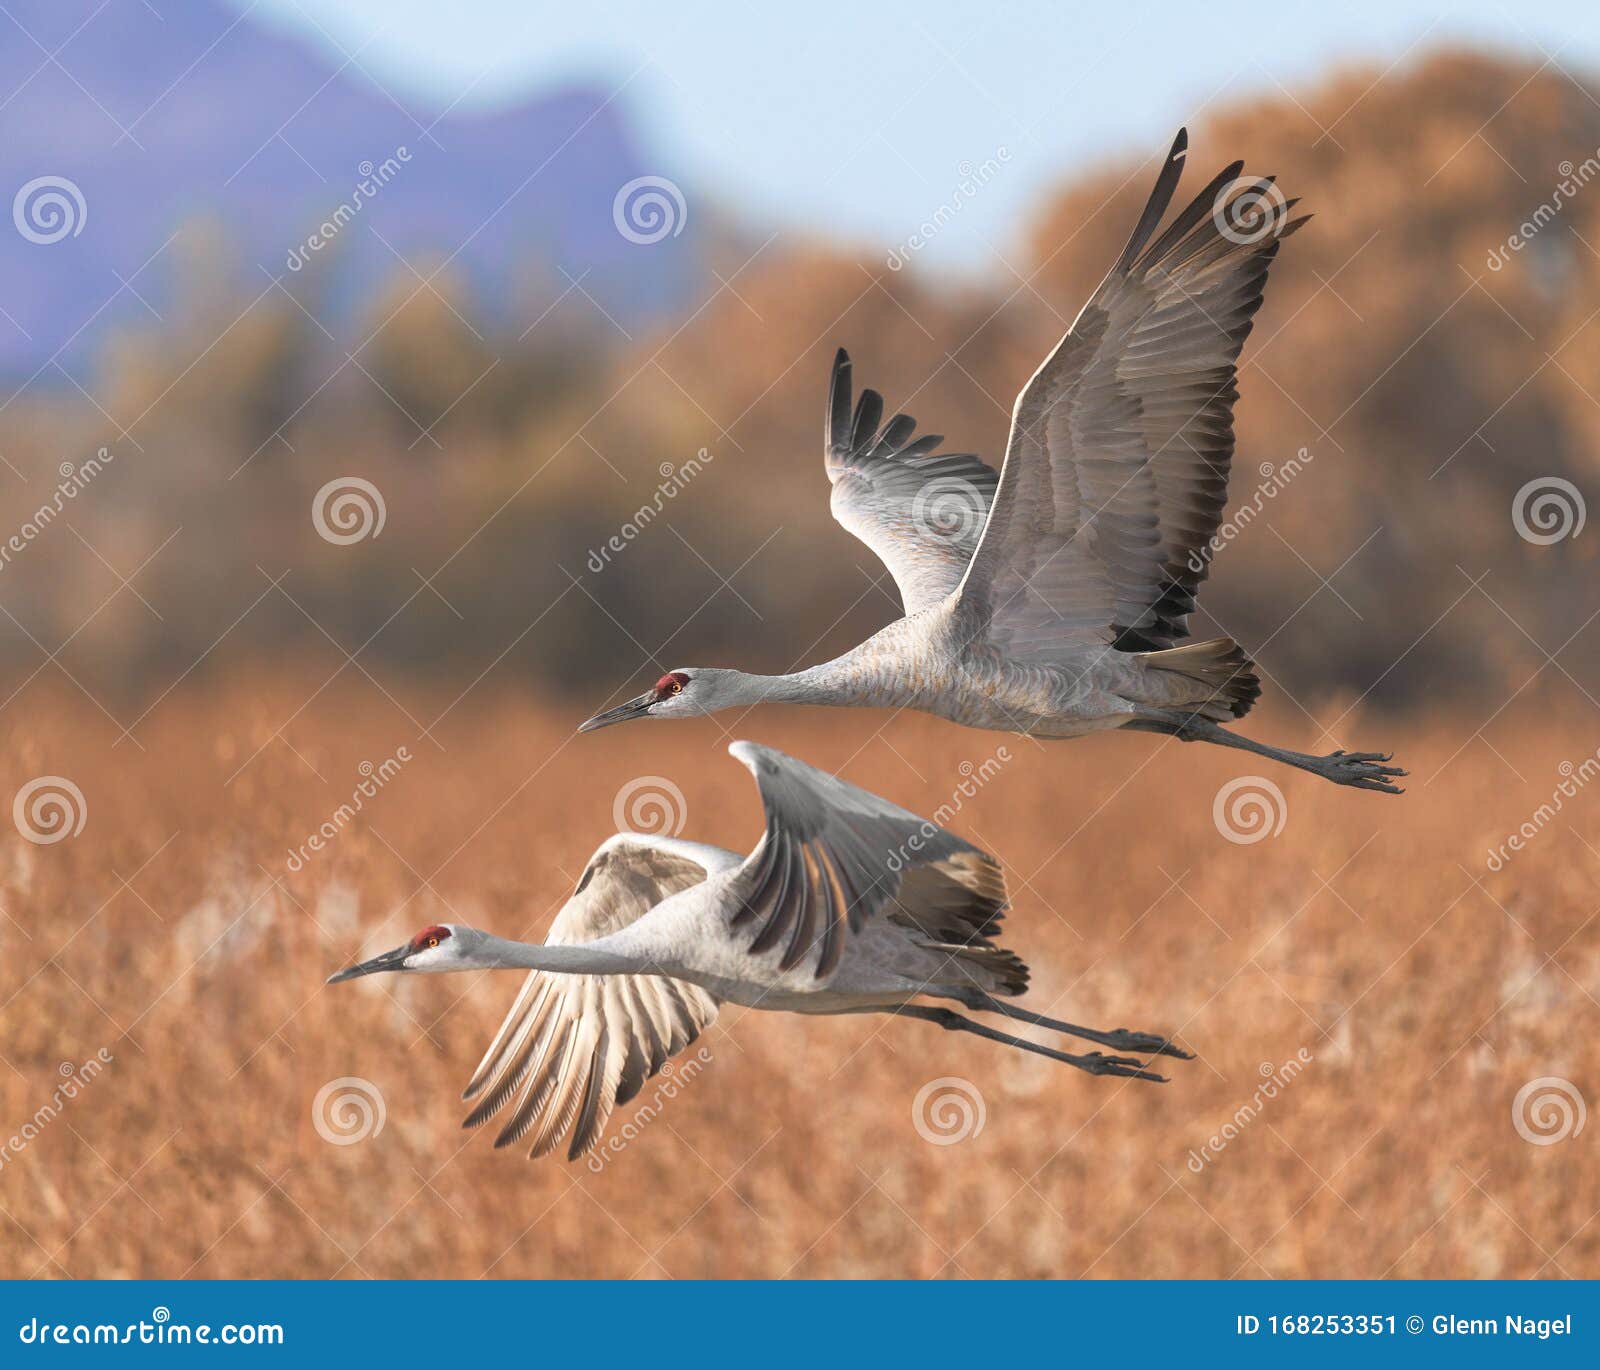 sandhill cranes in flight over marsh